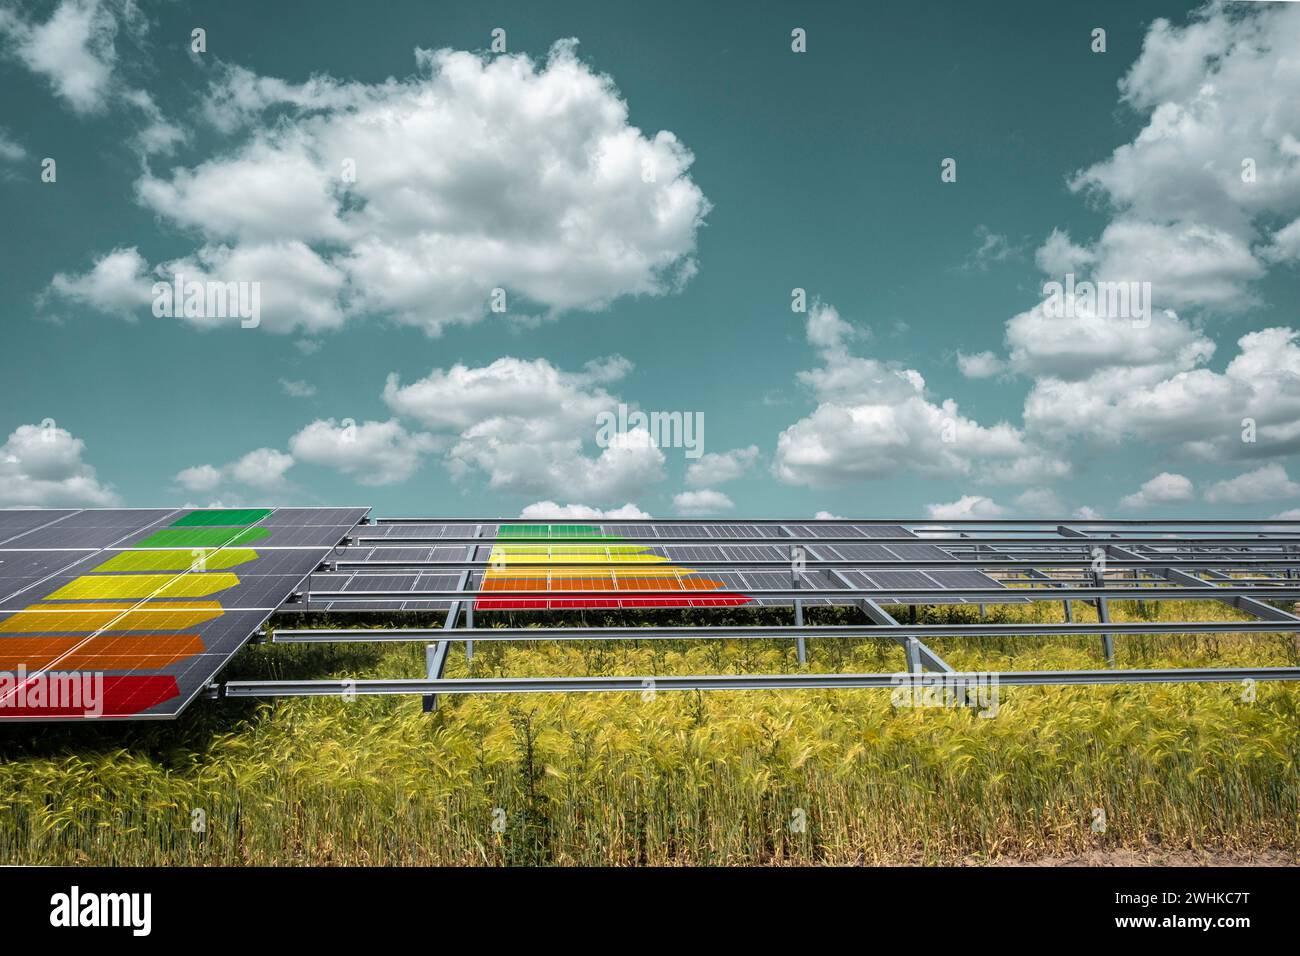 Solar panel system with EU energy label, symbolic image Stock Photo